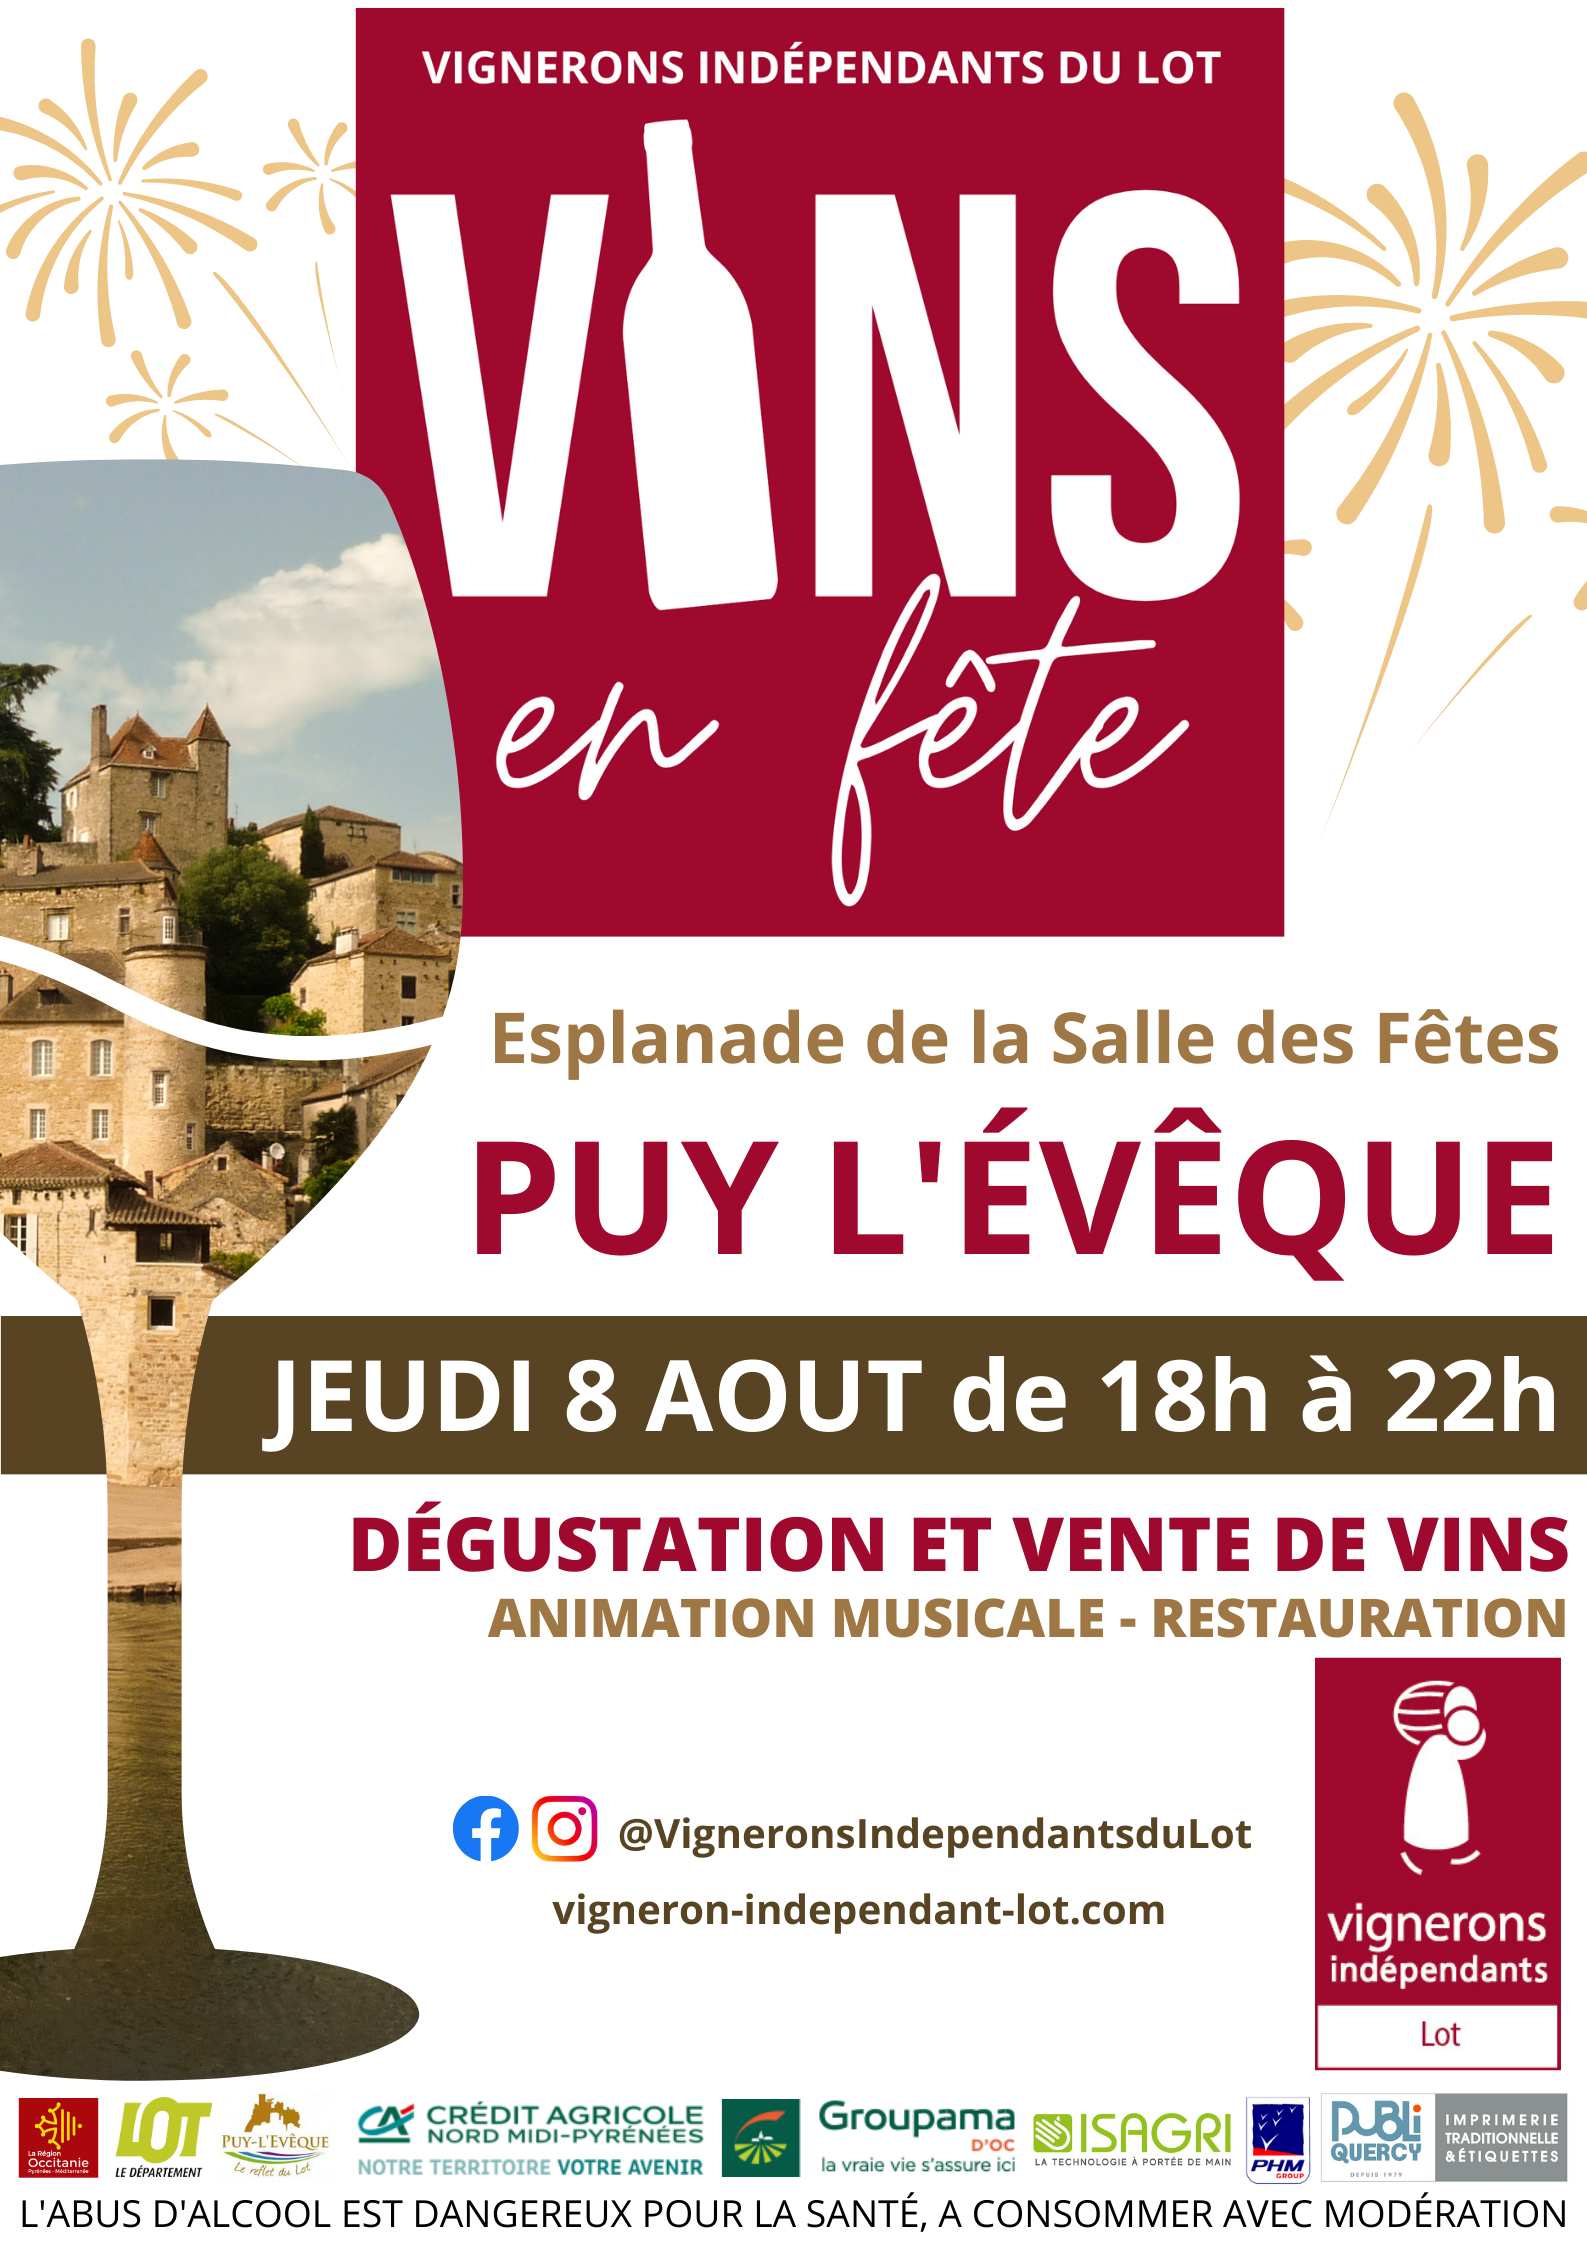 Figeac : Vins en fête à Puy-l'Evêque